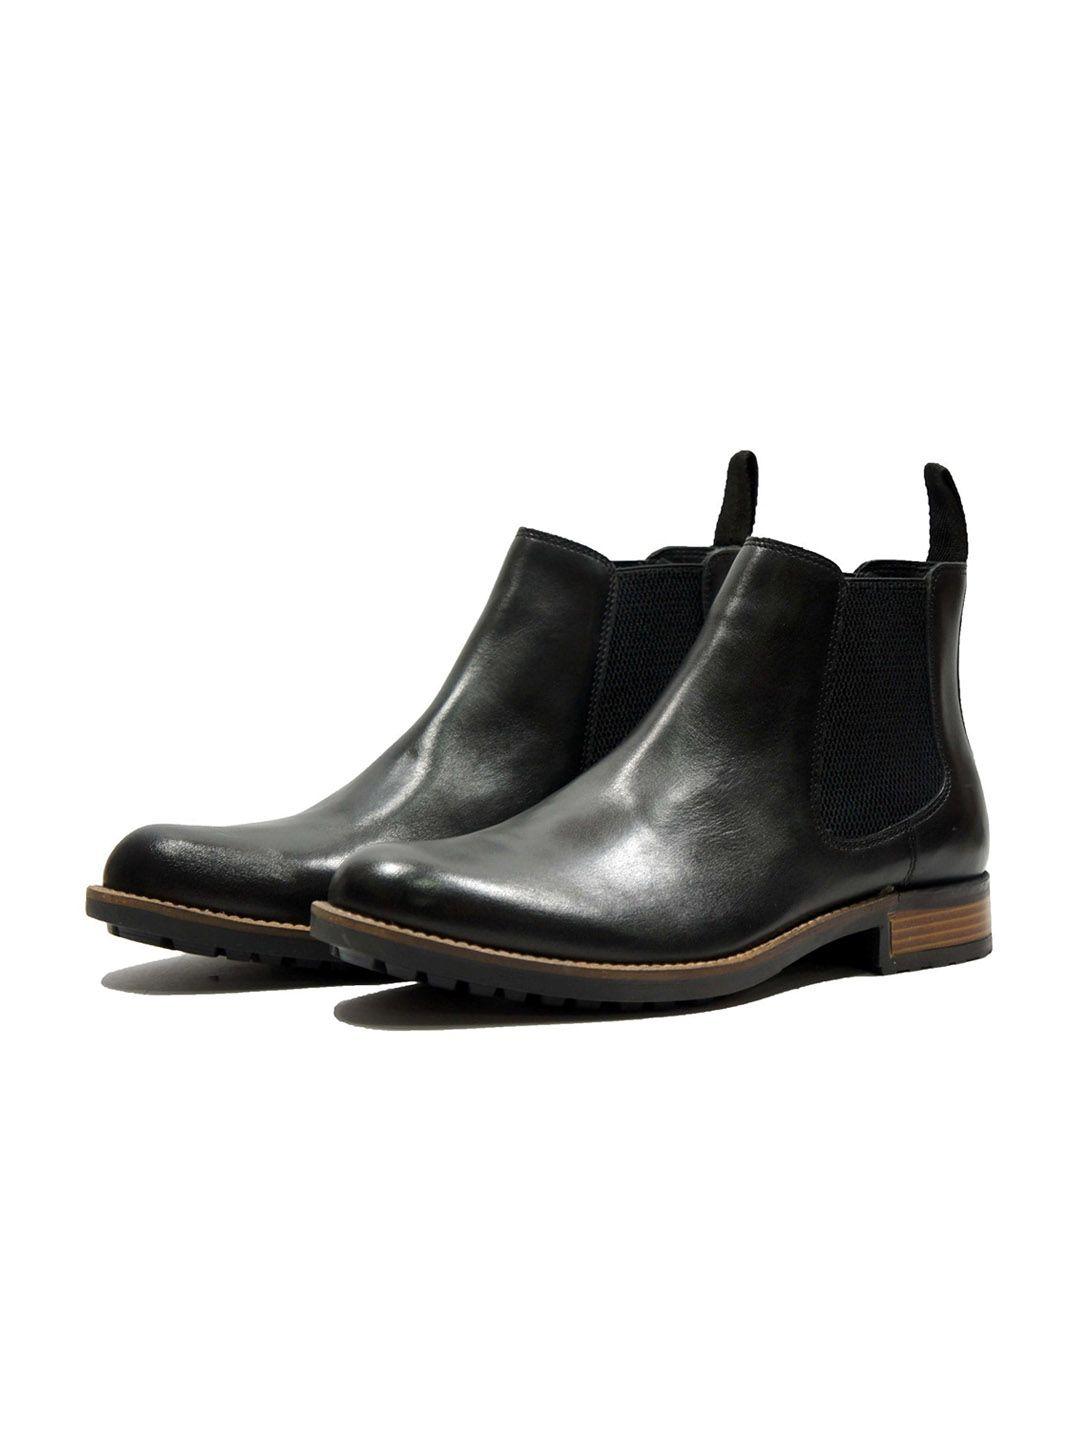 hx london men leather chelsea boots